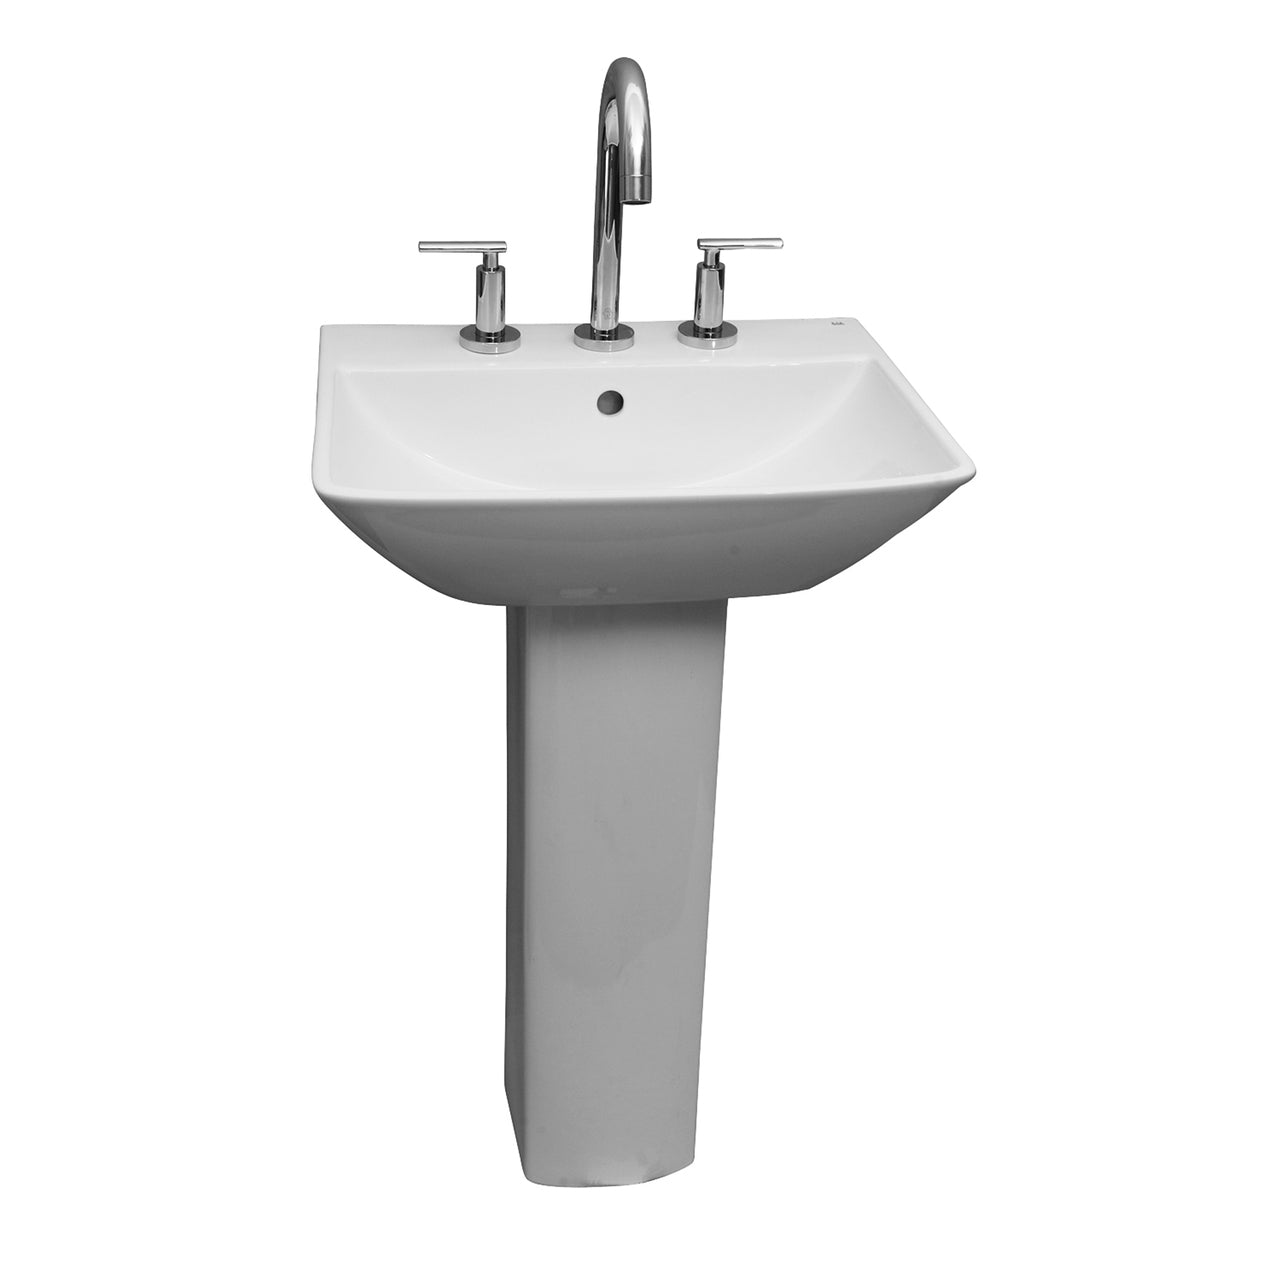 Summit 600 Pedestal Bathroom Sink White for 8" Widespread